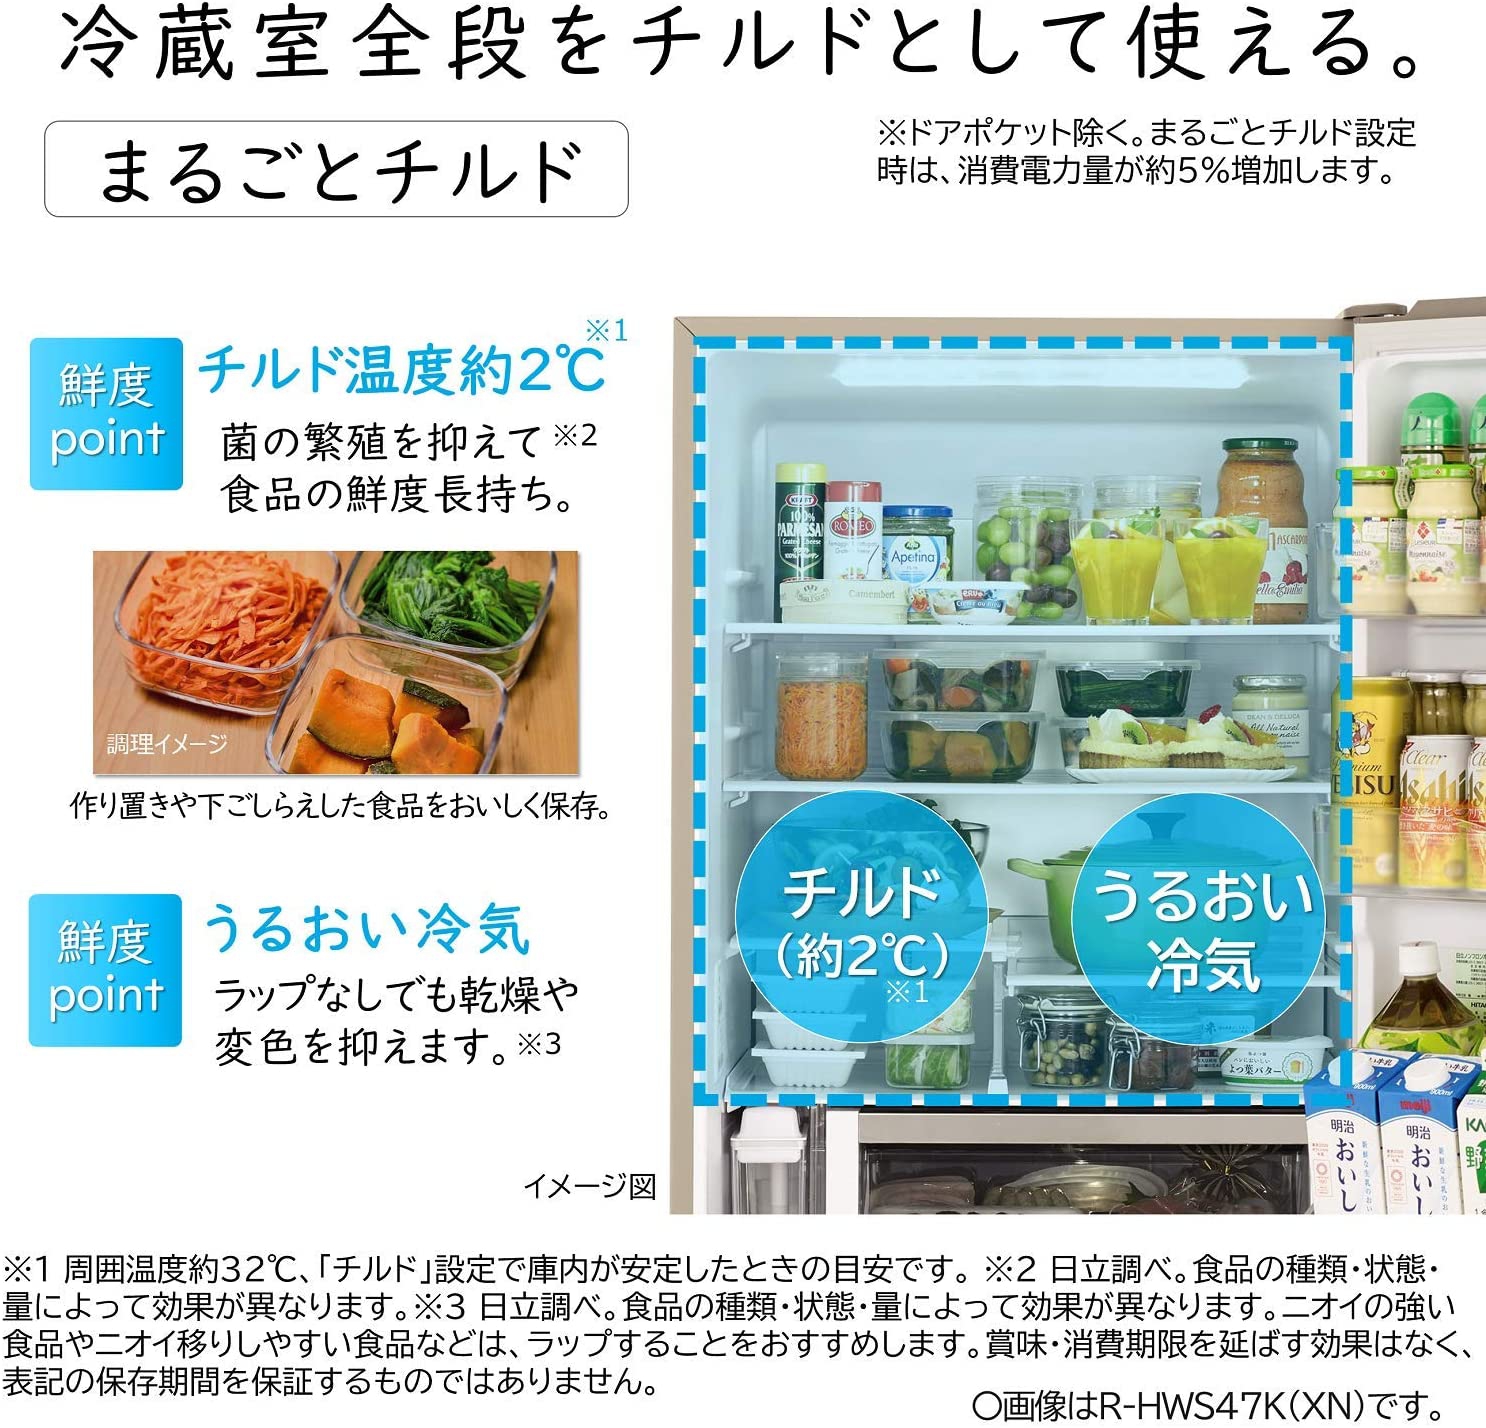 日立(HITACHI) 冷蔵庫 R-HWS47Nの商品画像サムネ4 